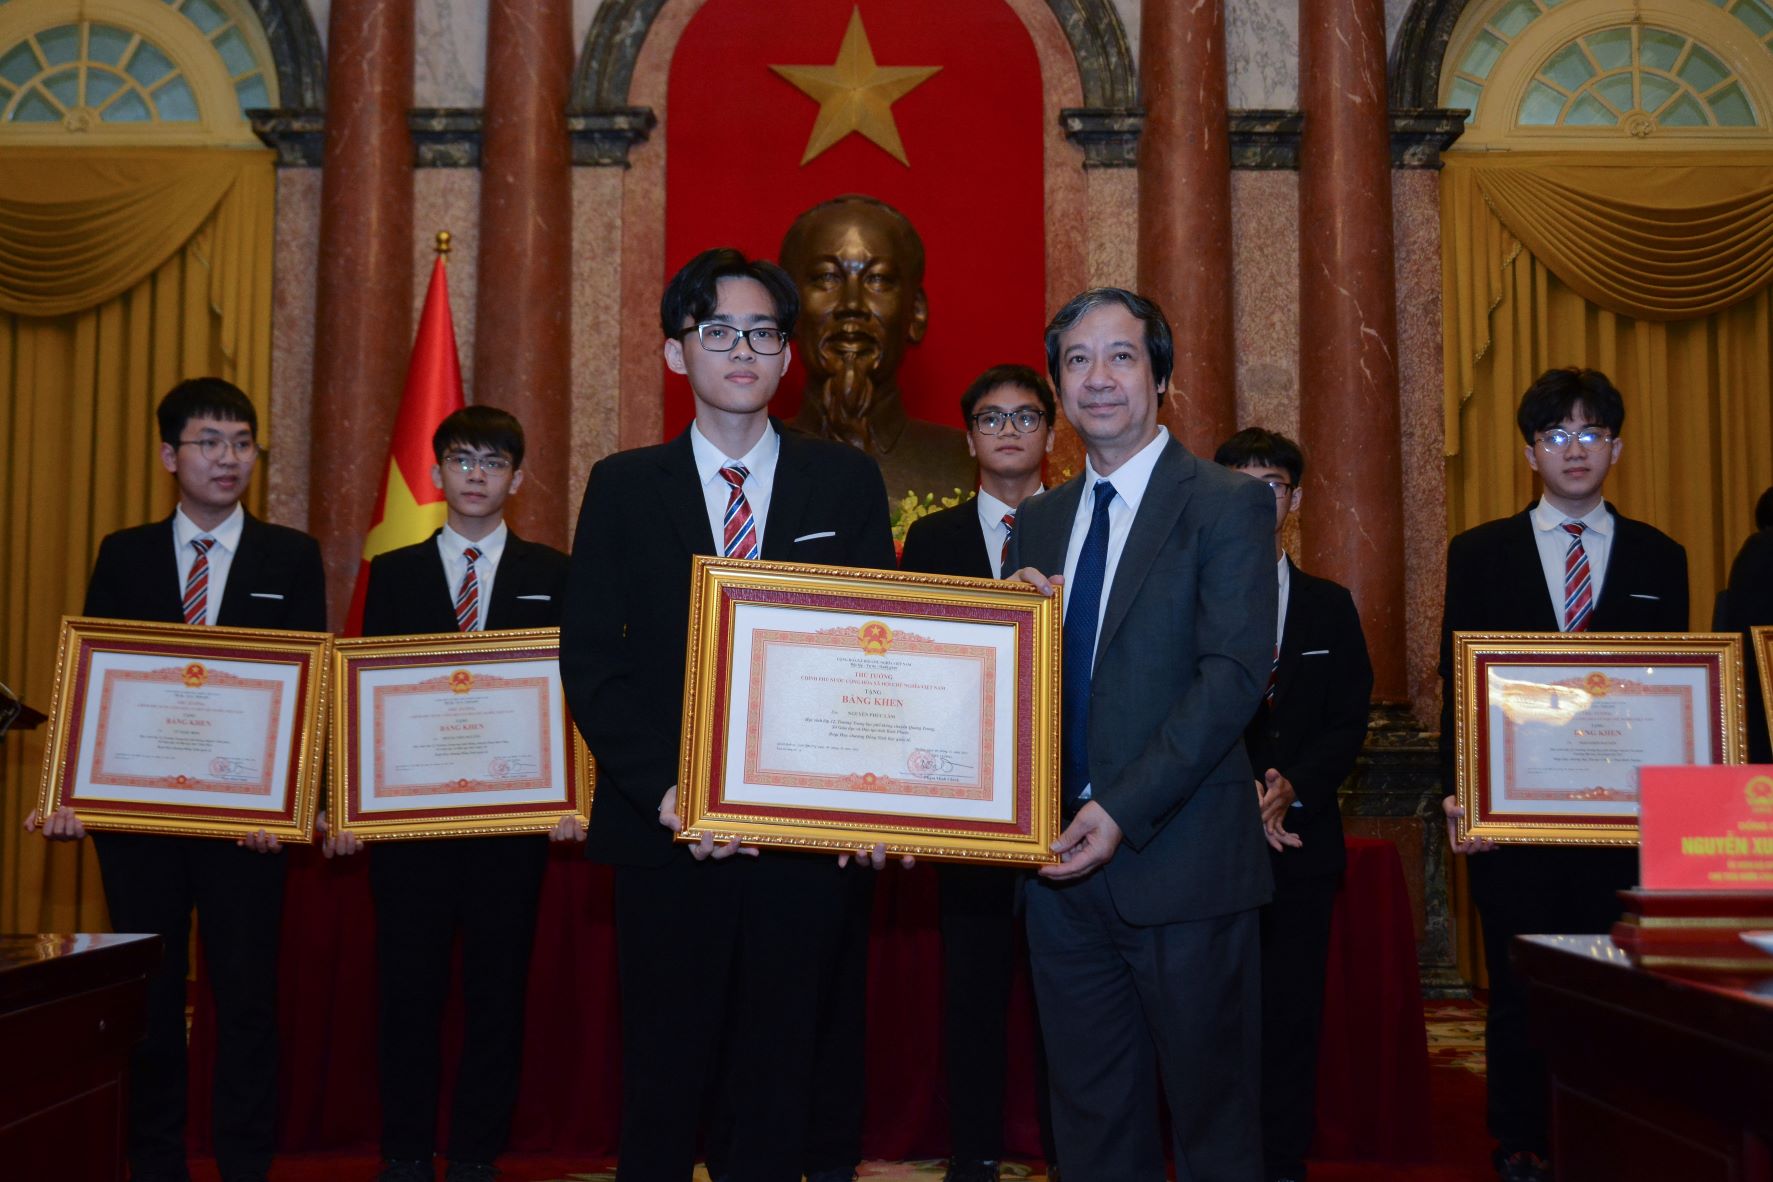 Trao tặng Huân chương Lao động, Bằng khen của Thủ tướng Chính phủ cho học sinh đoạt giải Olympic và KHKT quốc tế năm 2022 - Ảnh 3.